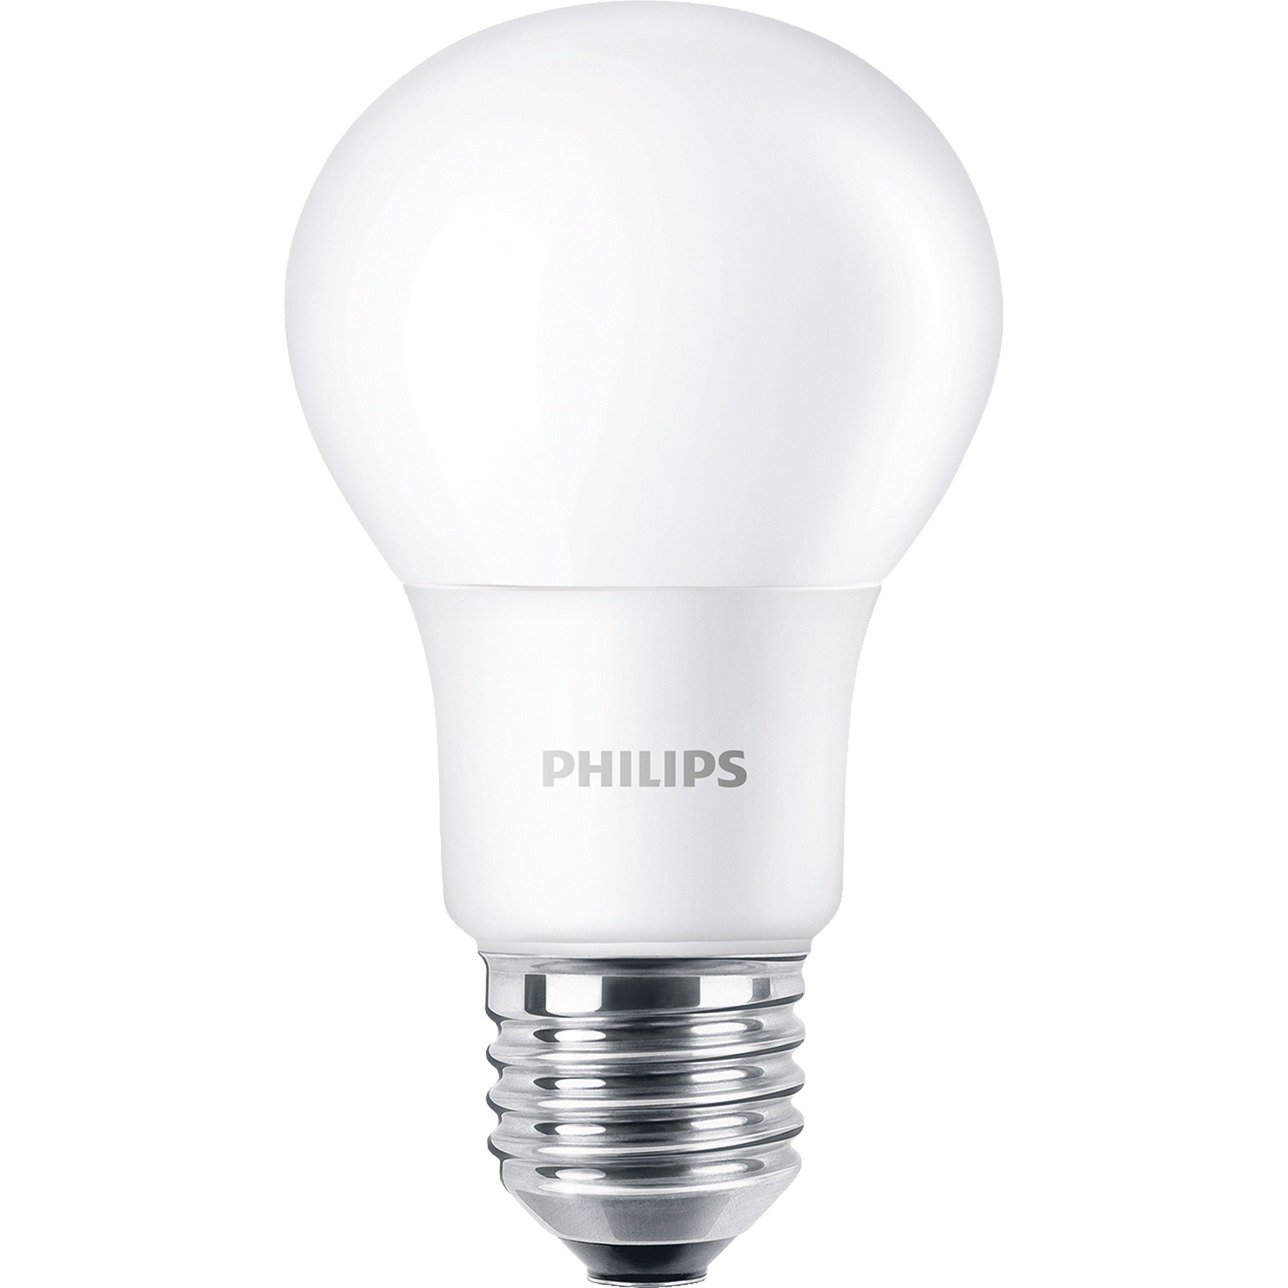 CorePro LEDbulb ND 5.5-40W A60 E27 827, LED-Lampe